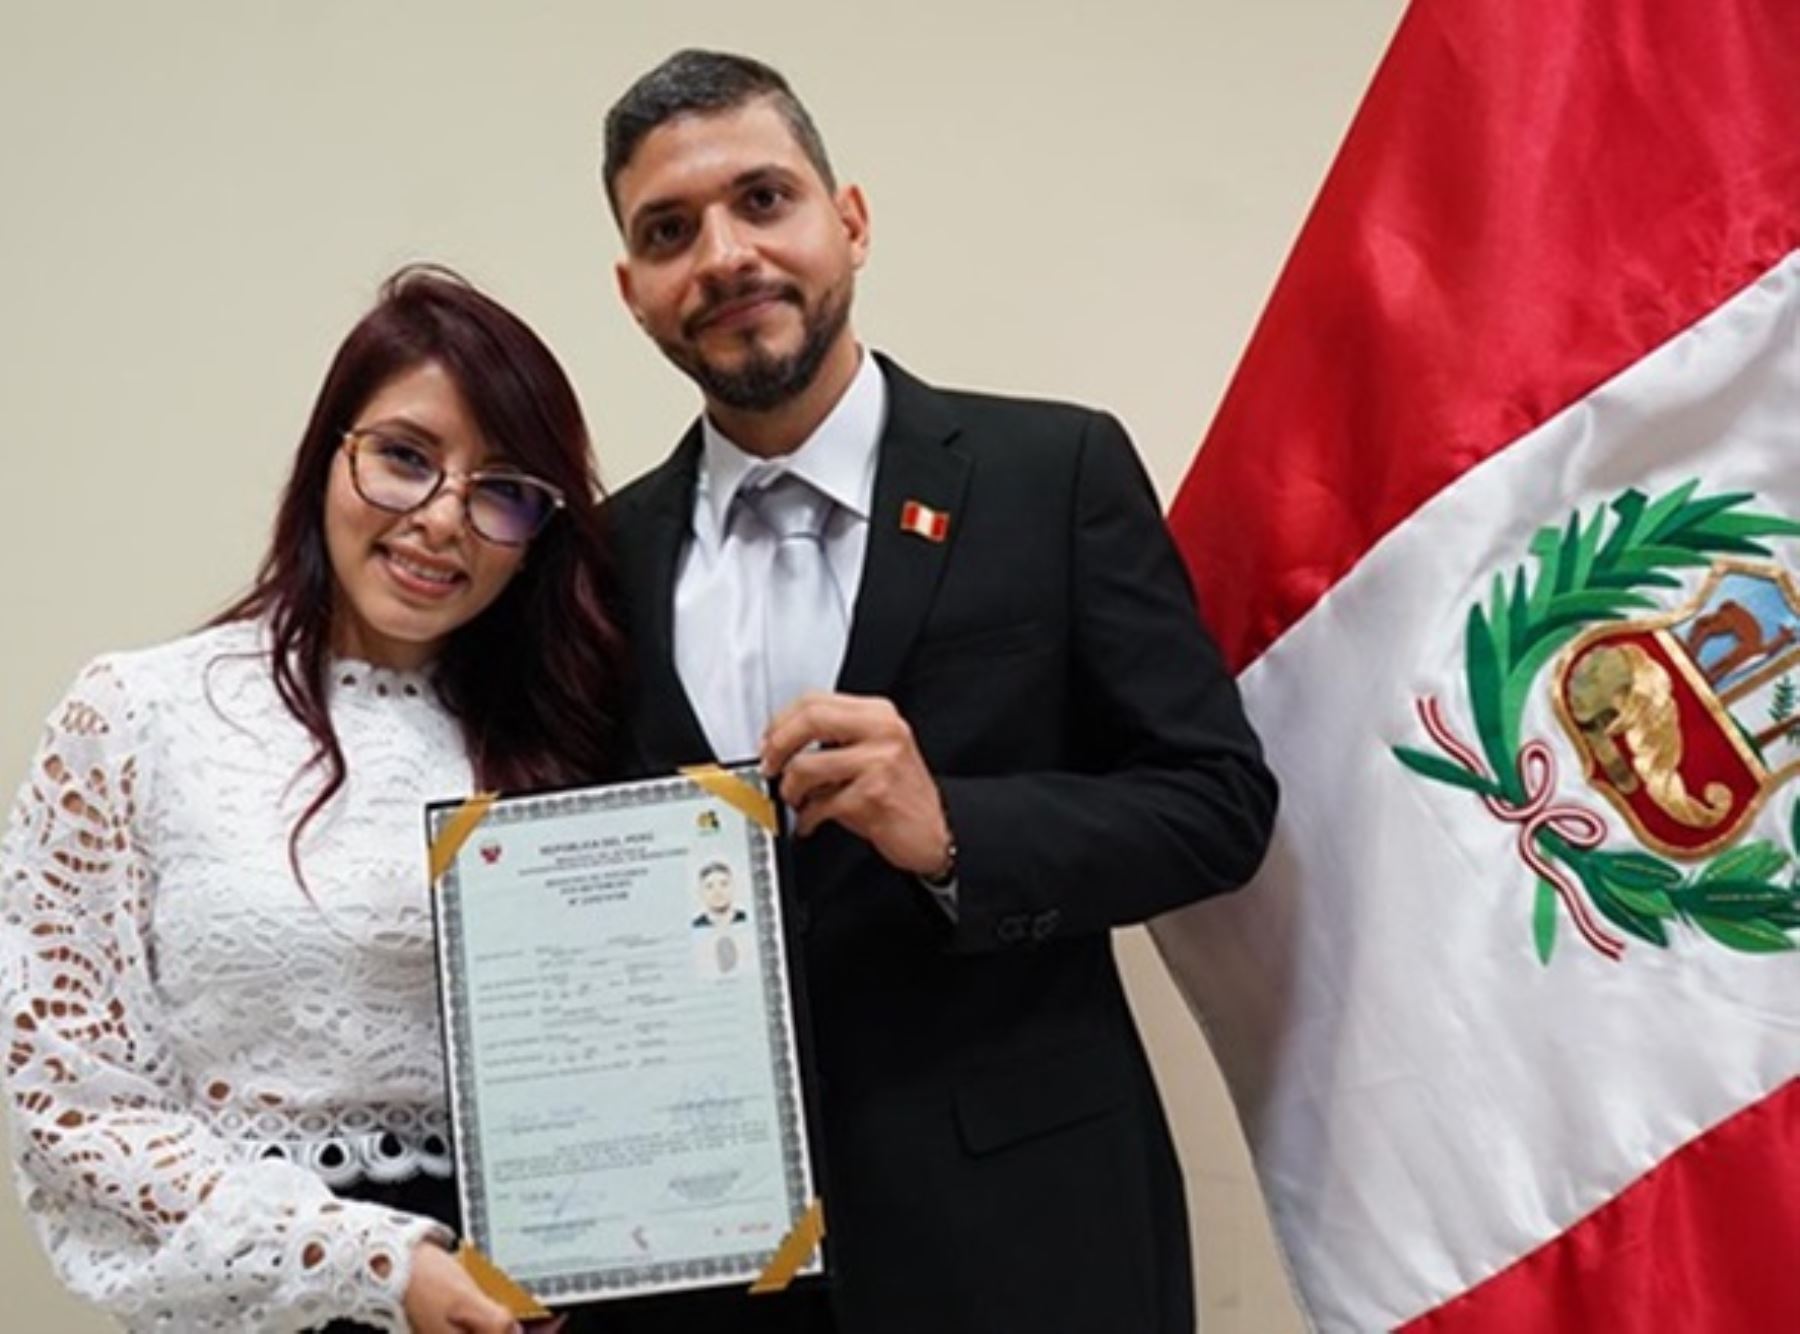 Seis ciudadanos extranjeros recibieron en Piura el título de la nacionalidad peruana por parte de la Superintendencia Nacional de Migraciones. ANDINA/Difusión